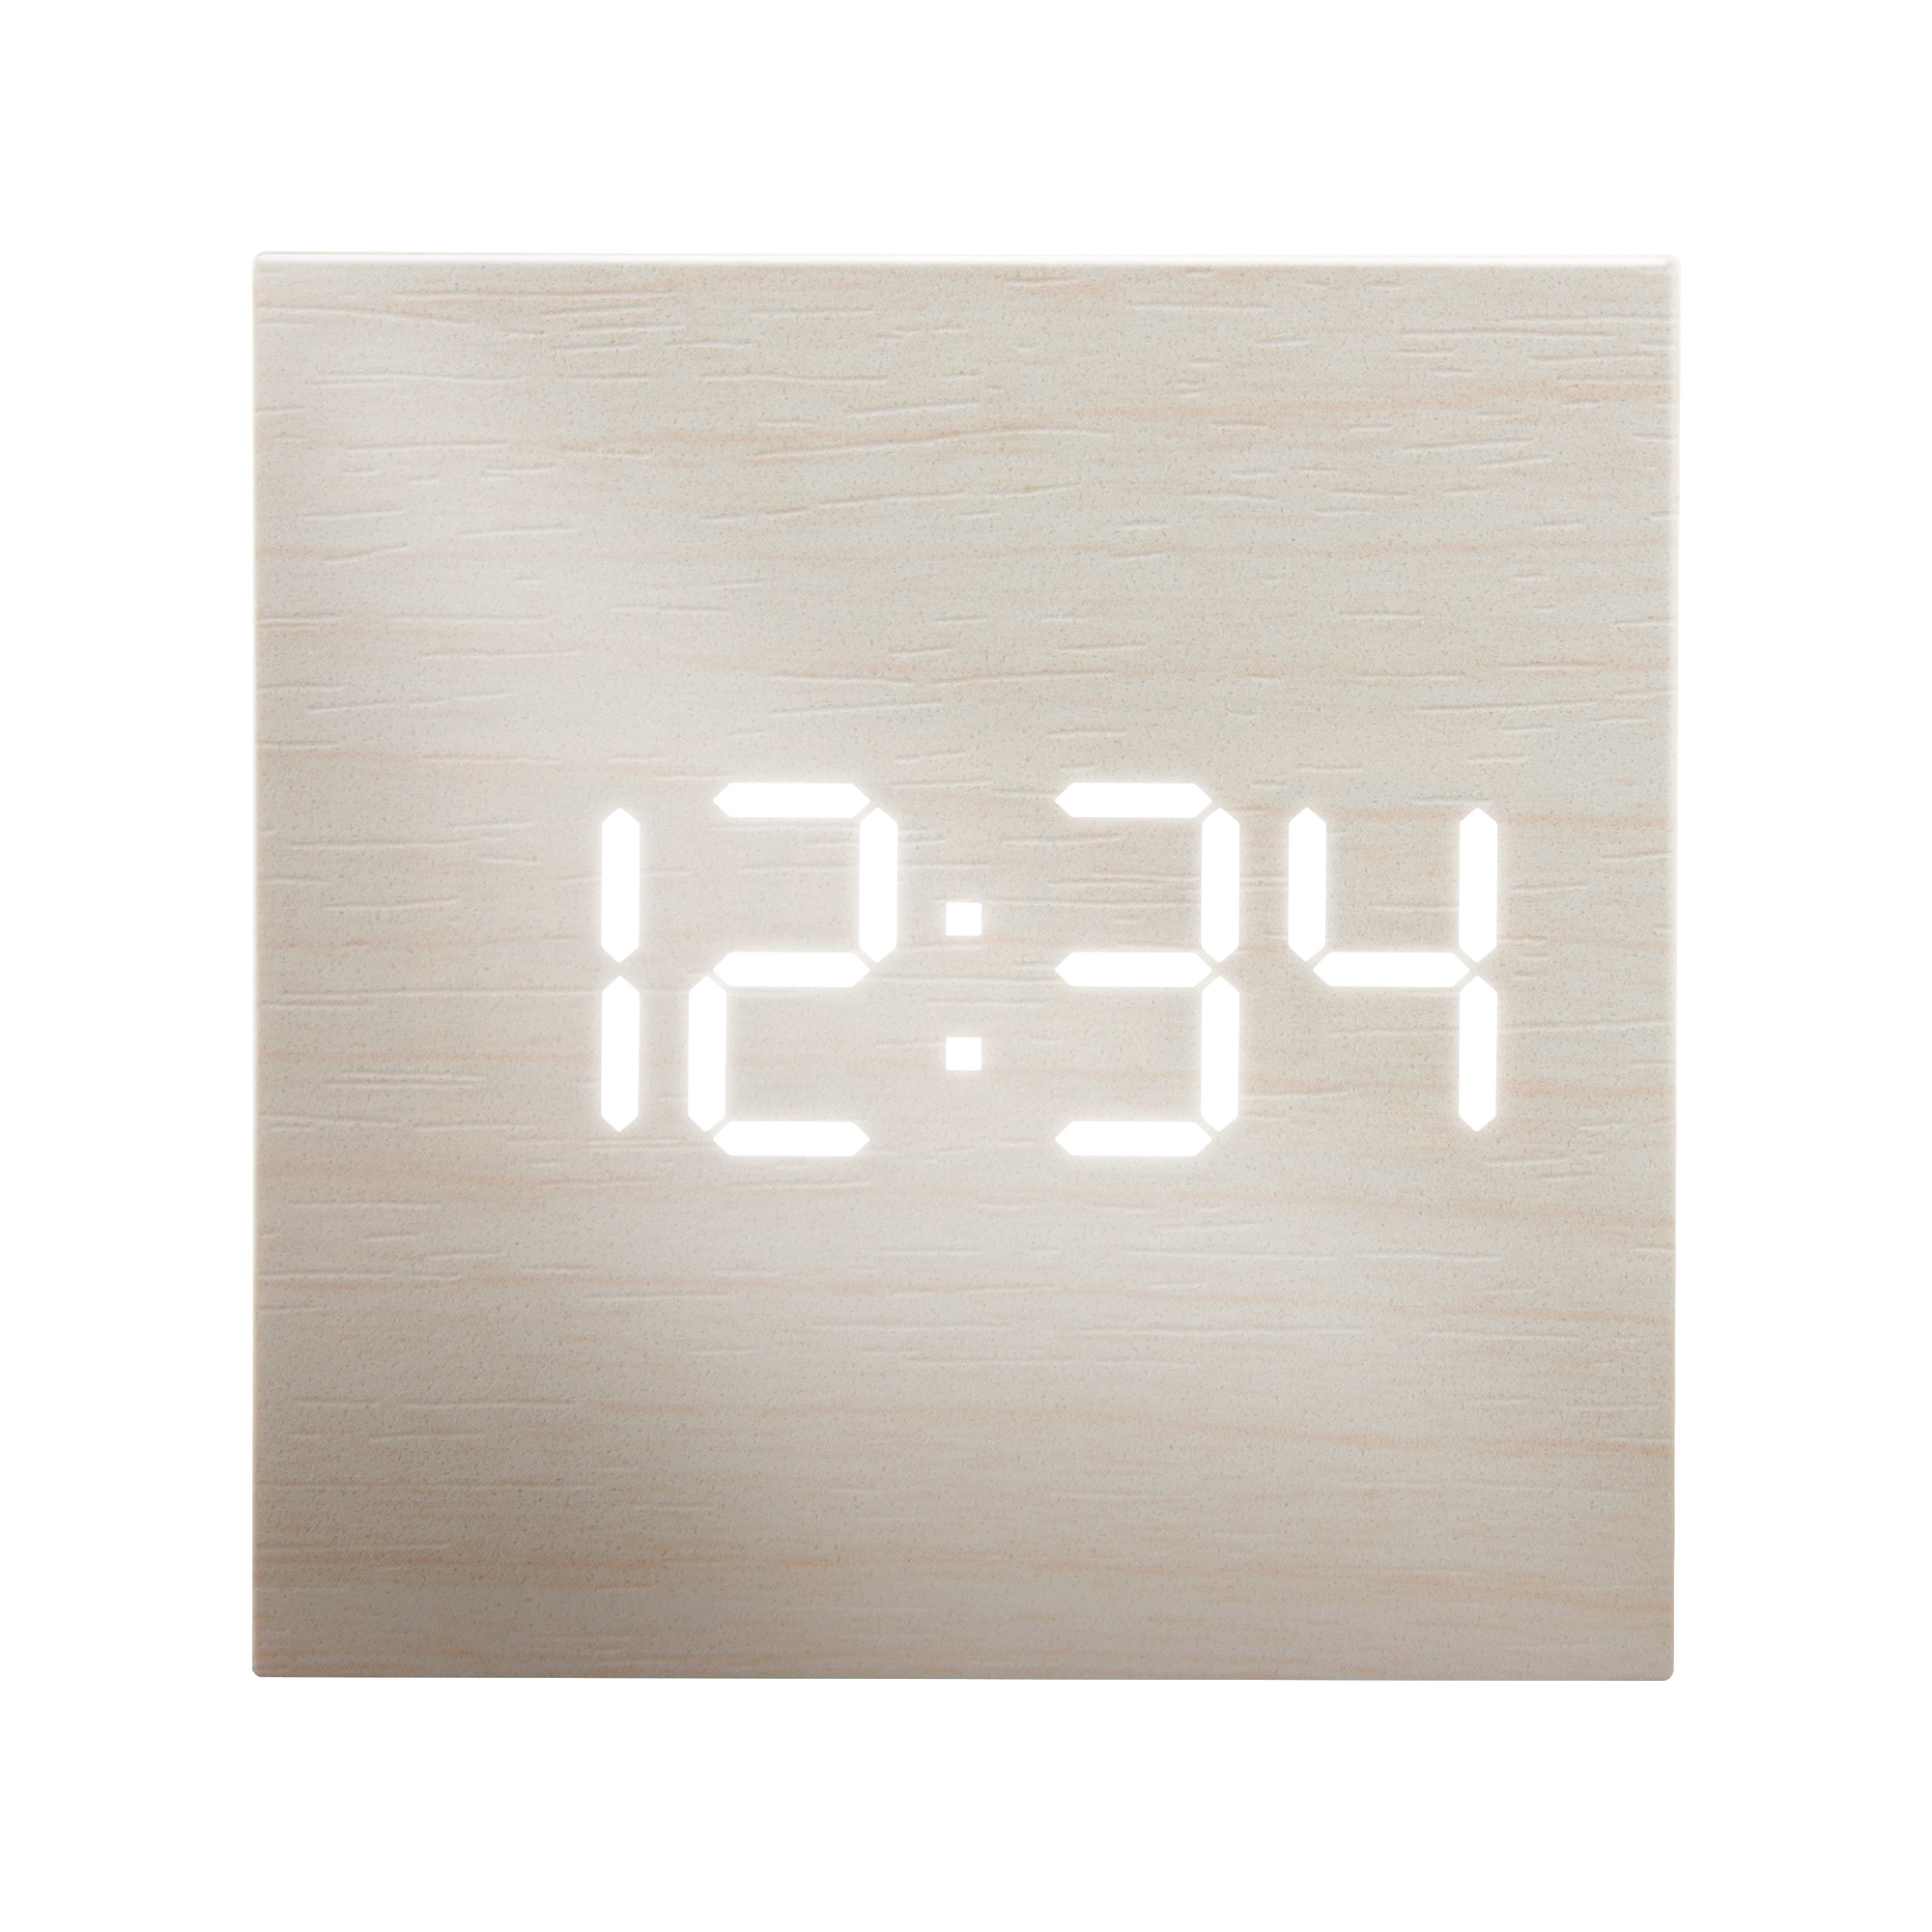 MINI Alarm Clock w Temperature Display